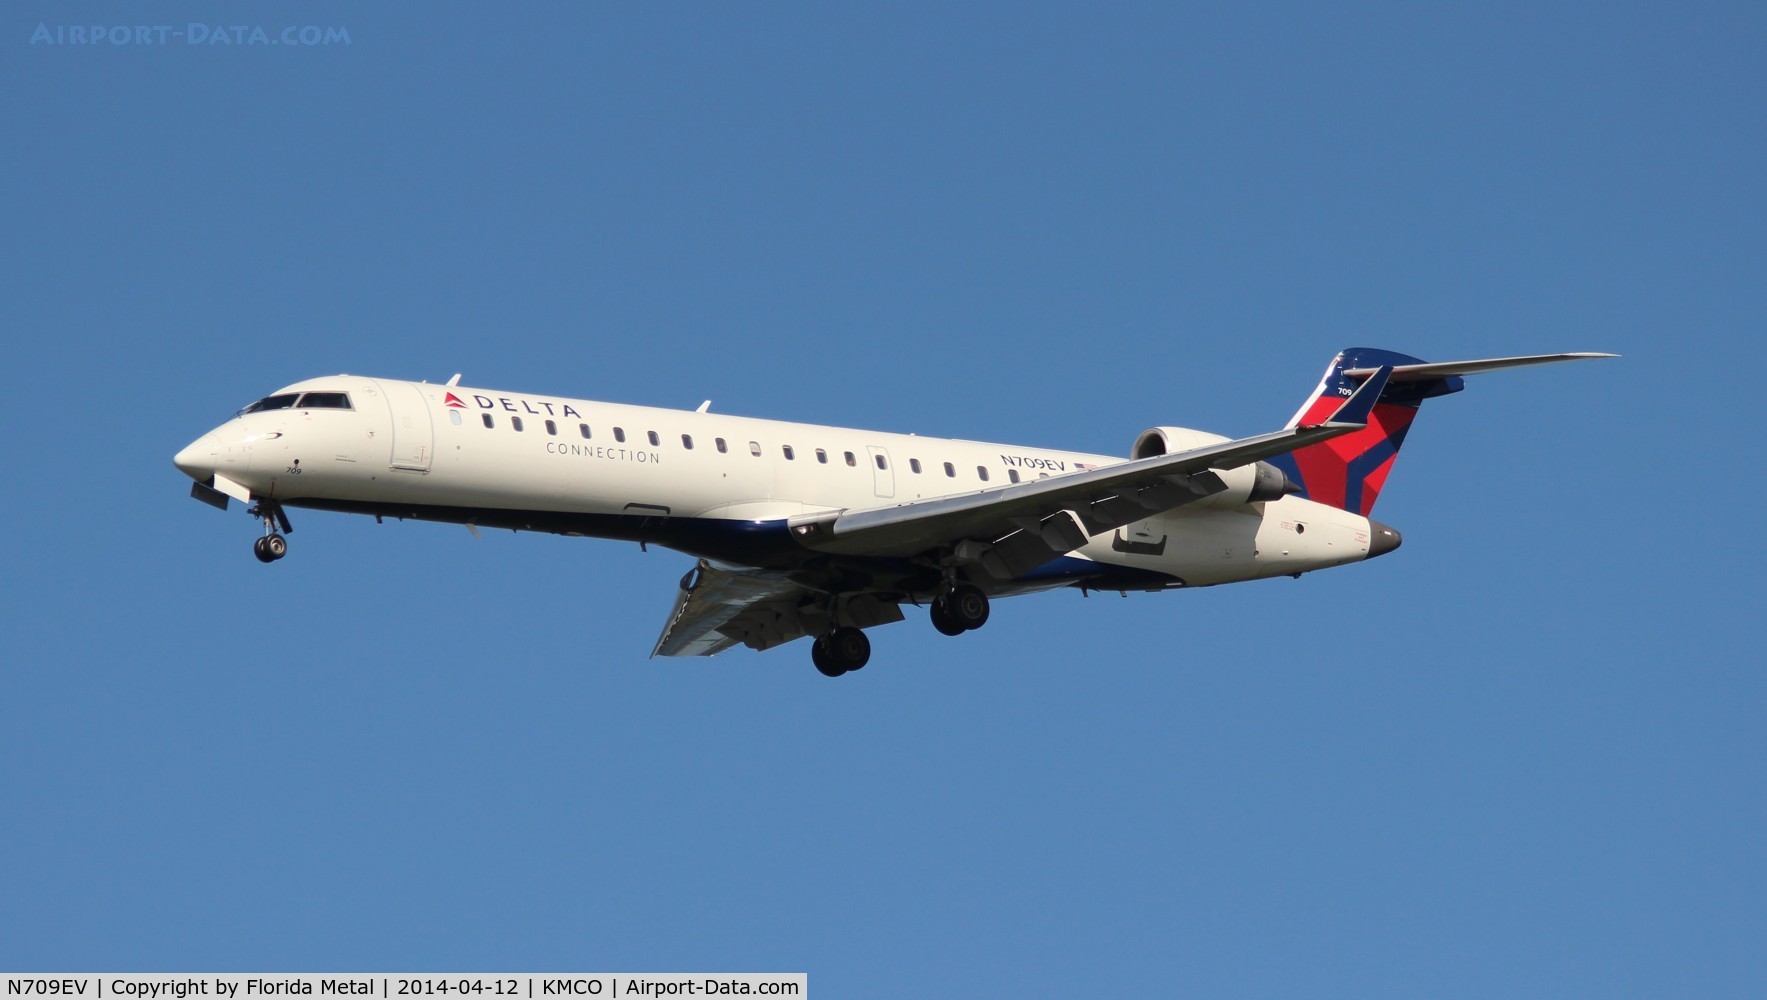 N709EV, 2002 Bombardier CRJ-701 (CL-600-2C10) Regional Jet C/N 10068, MCO spotting 2014